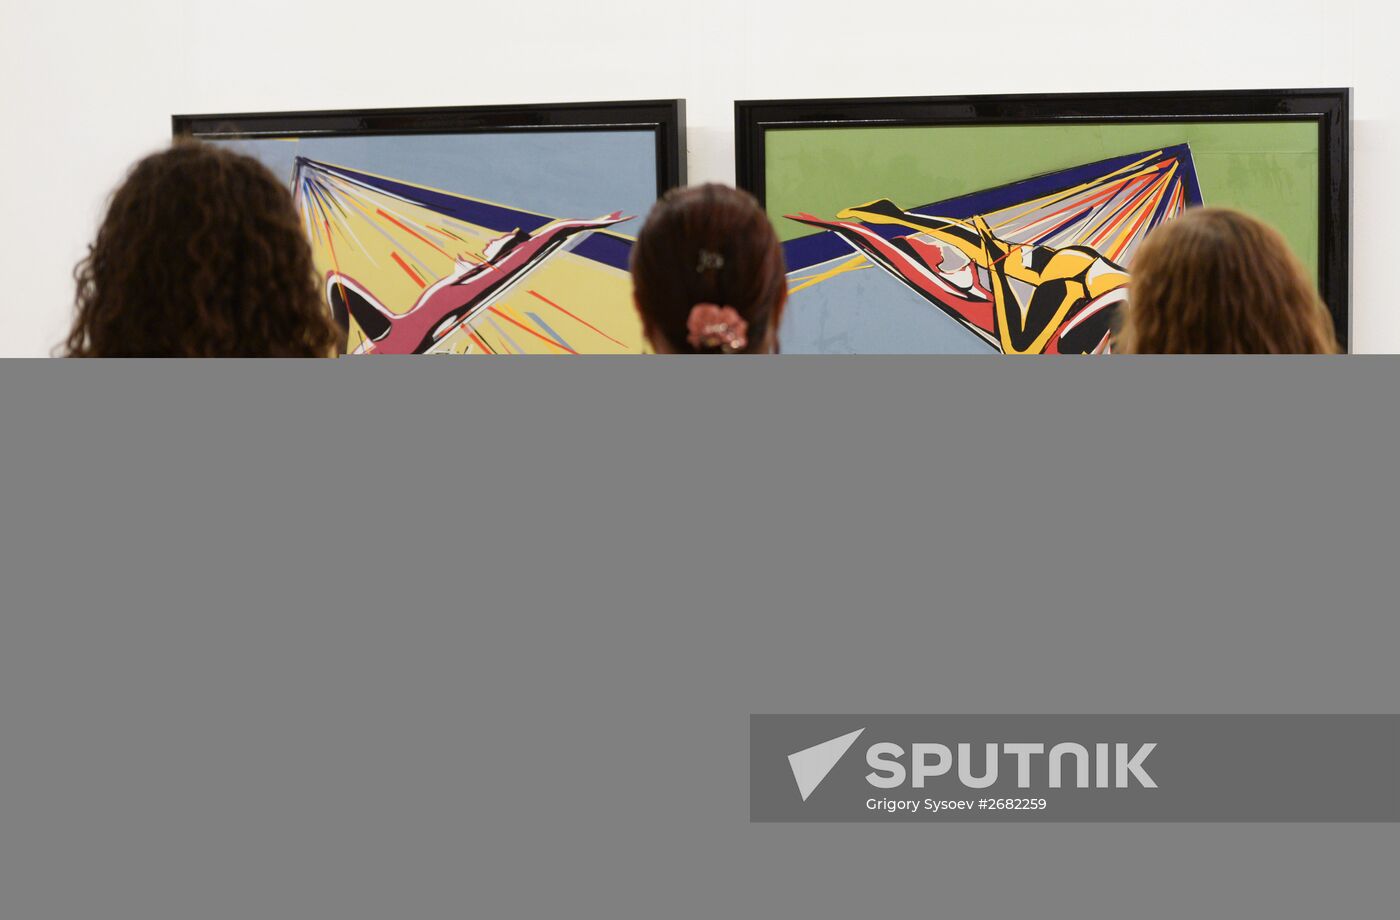 Pál Sarkozy's exhibition opens at Zurab Tsereteli's art gallery